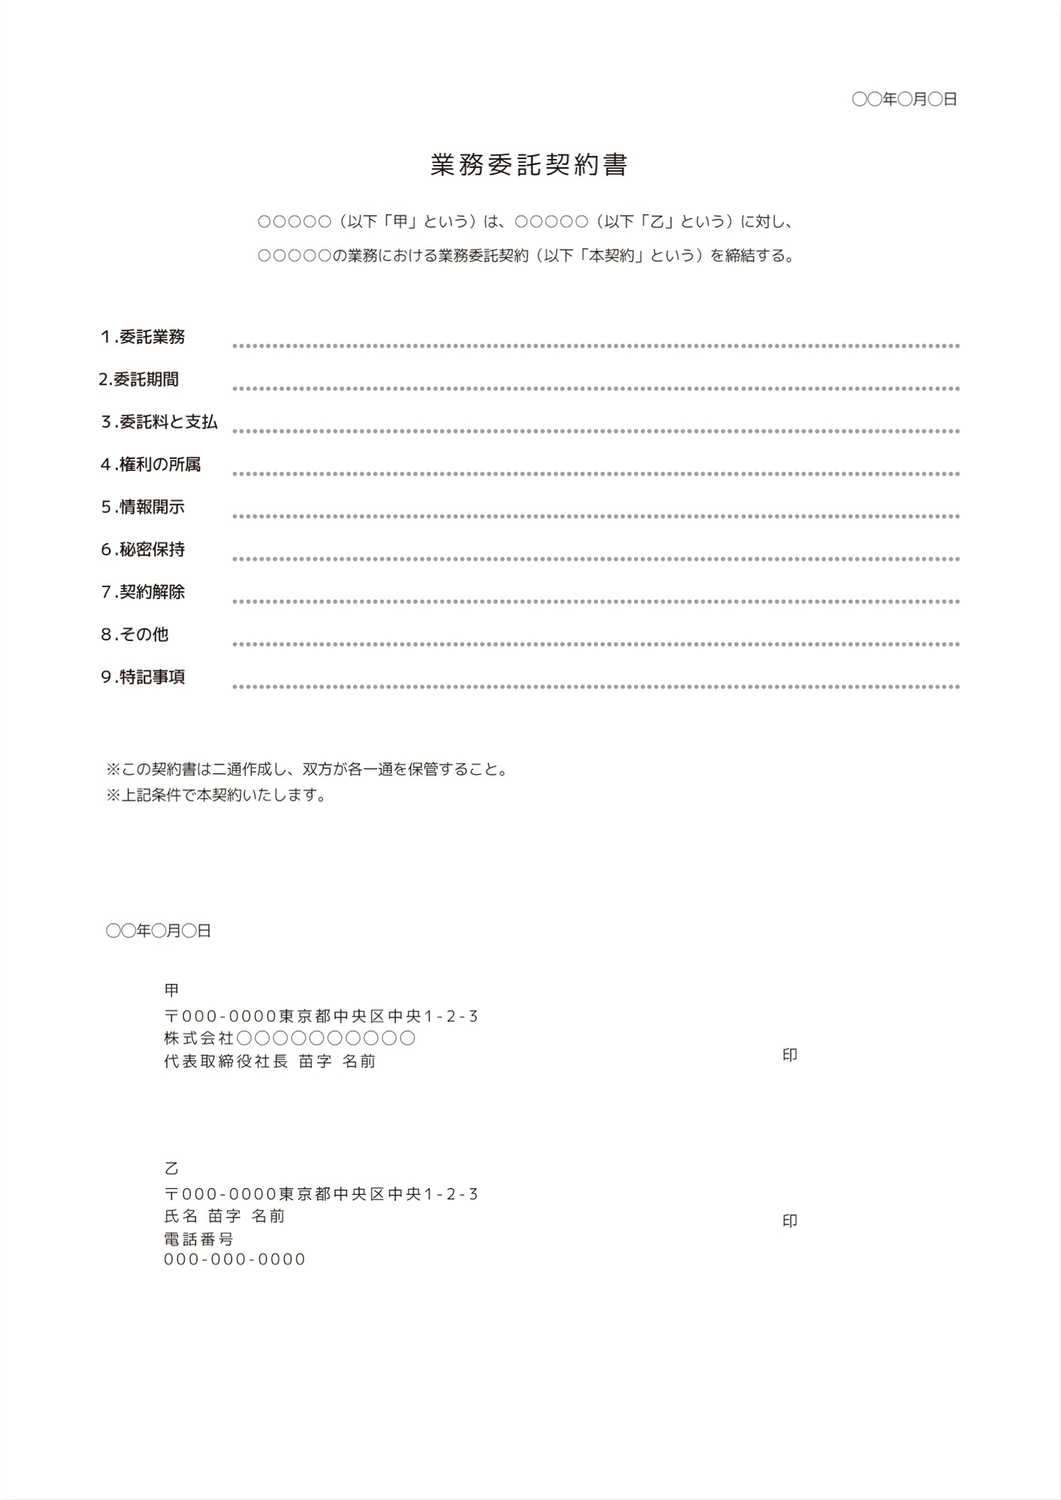 業務委託契約書, viết ngang, chủ tịch, Họ và tên, Tài liệu A4 mẫu